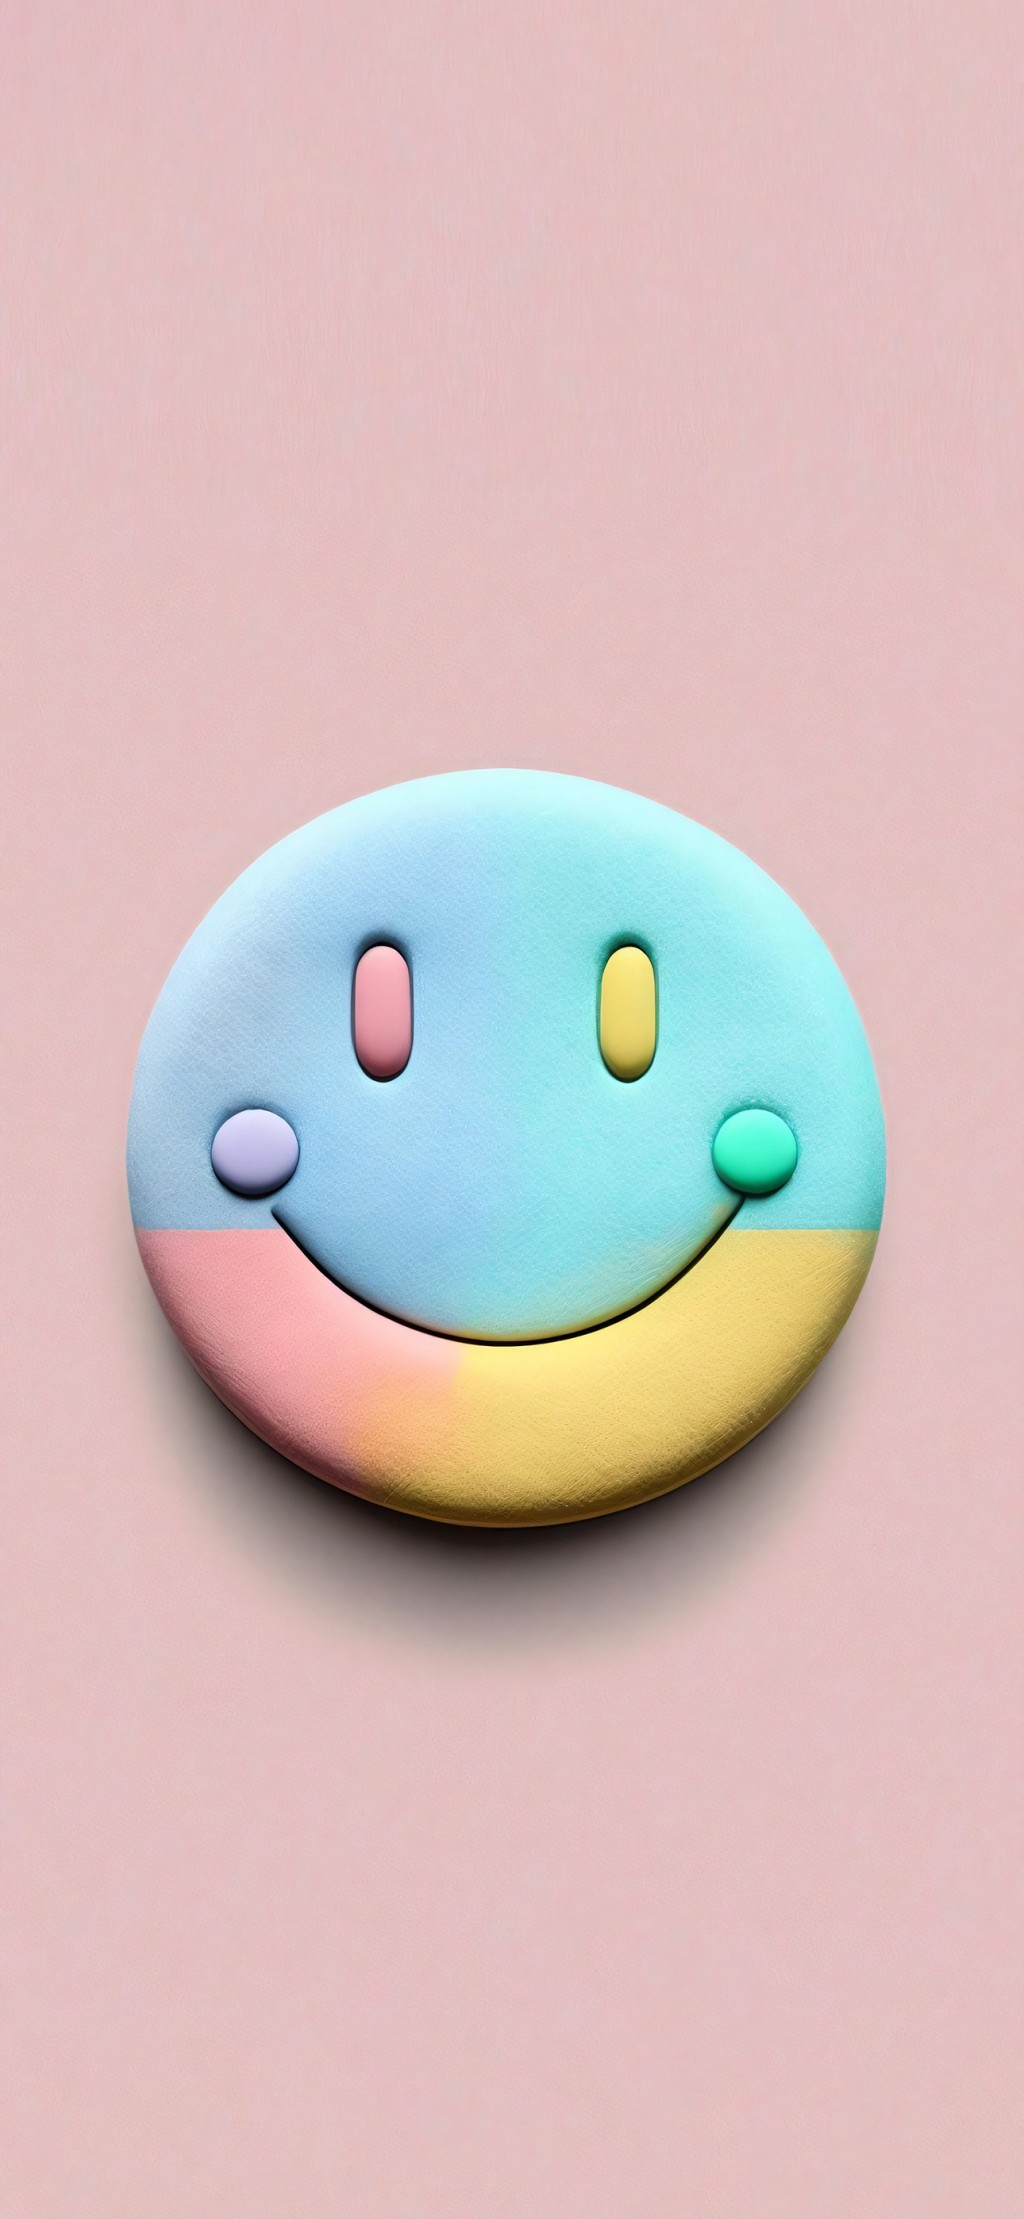 创意3D立体可爱emoji微笑表情包手机壁纸